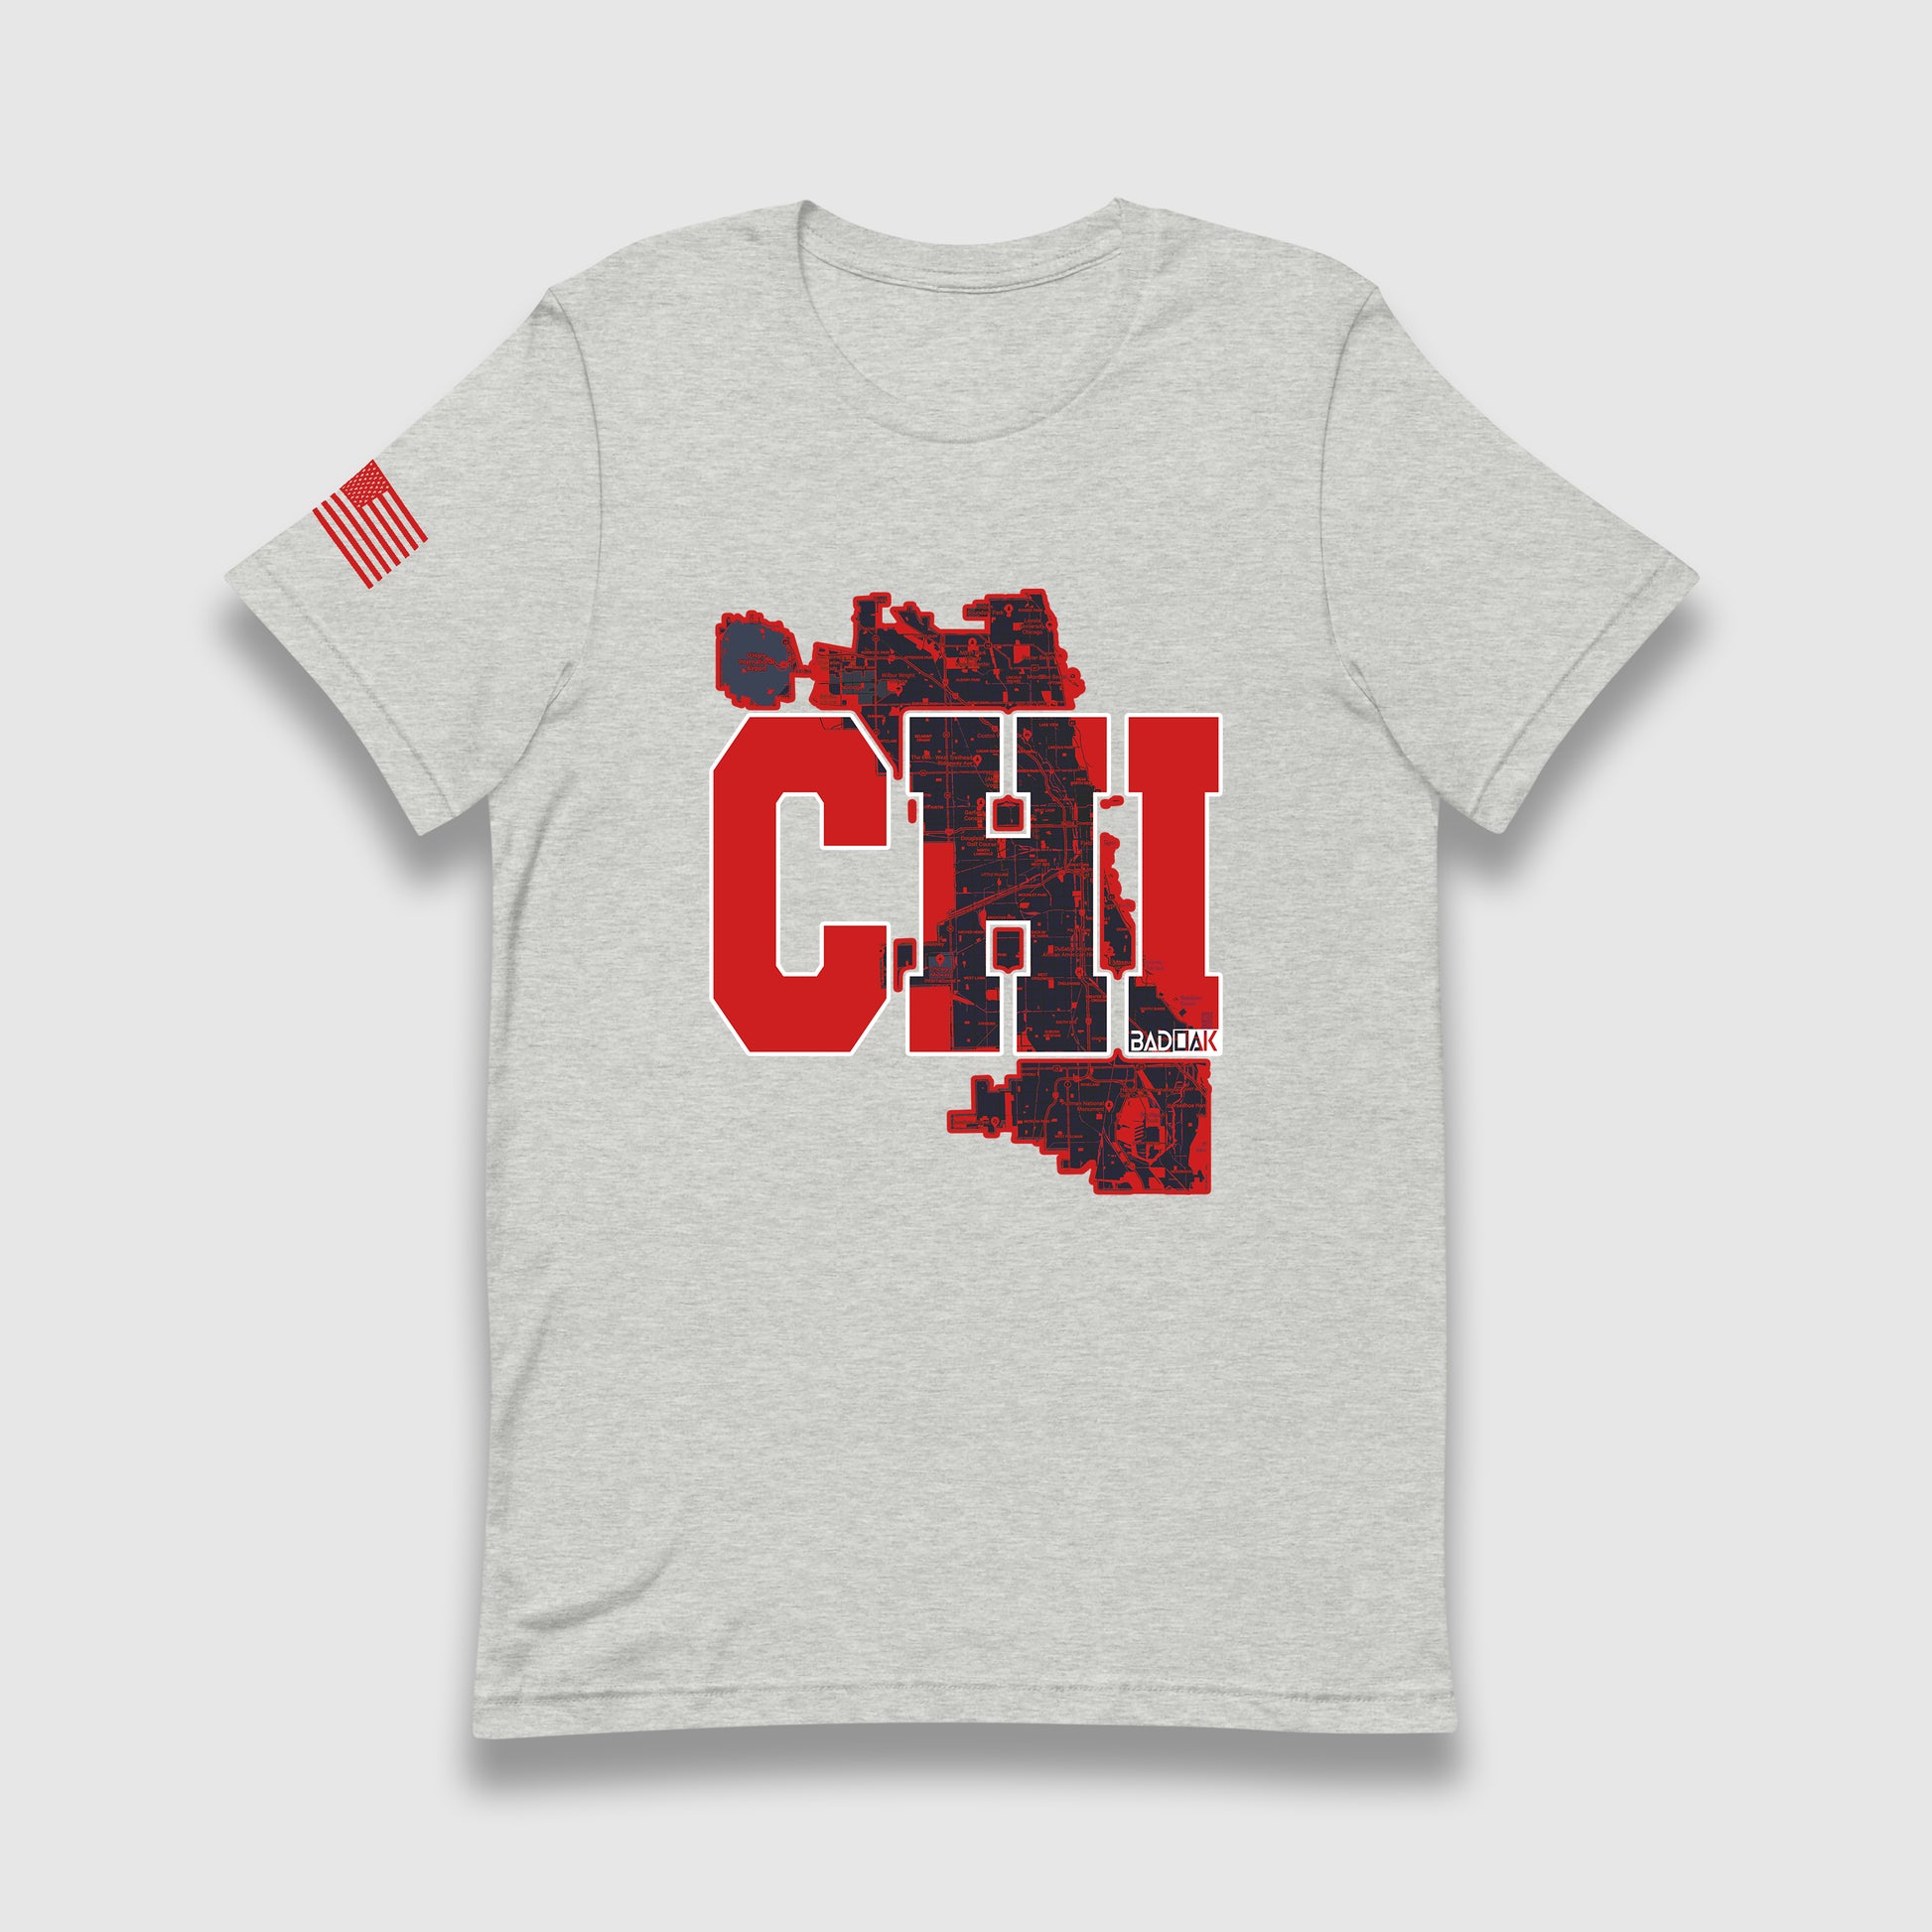 CHI (Chicago) Unisex T-Shirt - BAD OAK